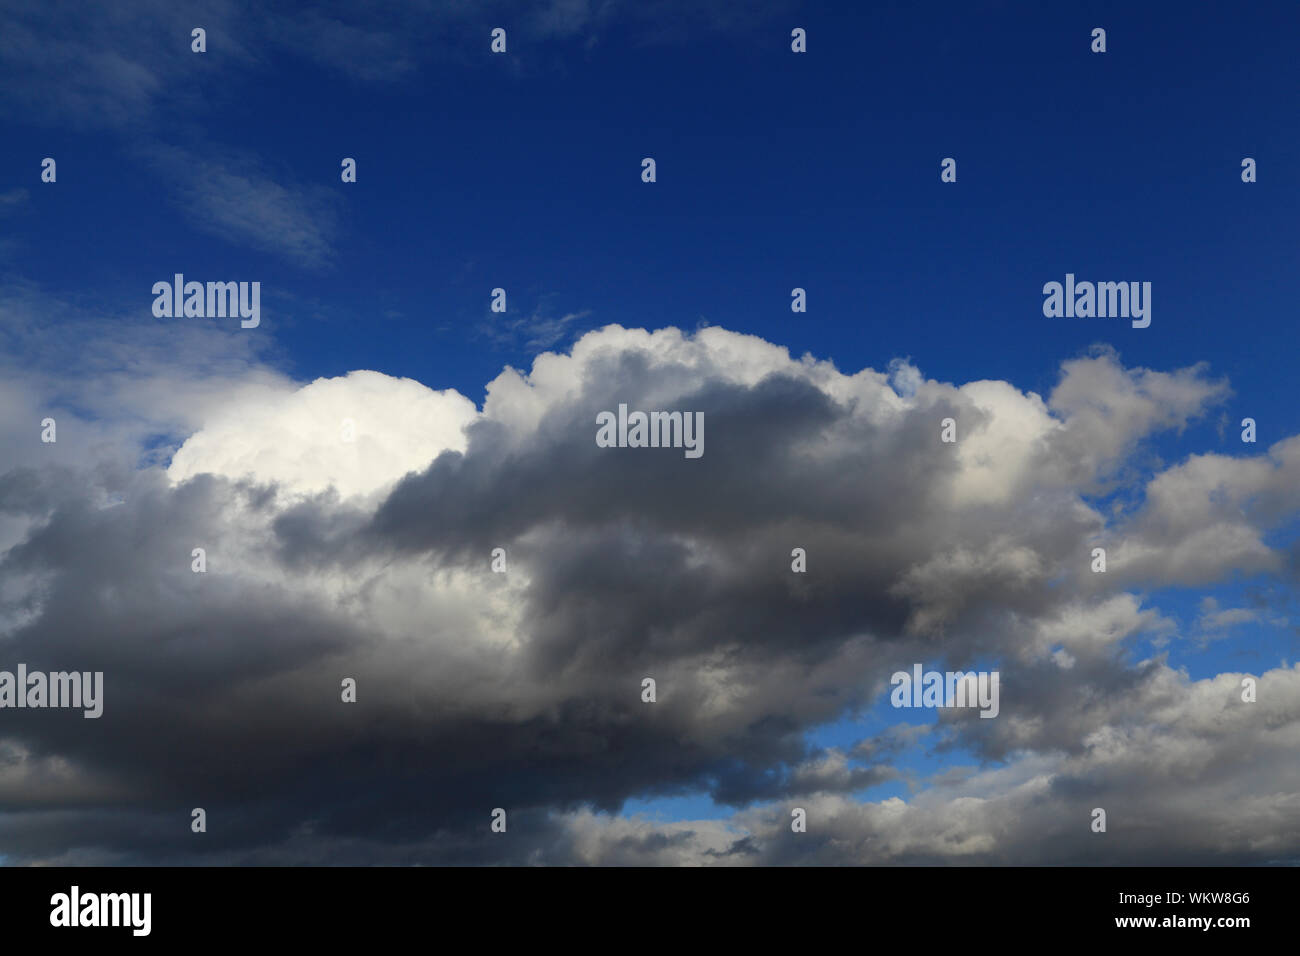 Regen Wolken, Anfahren, grau, dunkel, weiß, Wolken, blauer Himmel, Wetter, Himmel Stockfoto